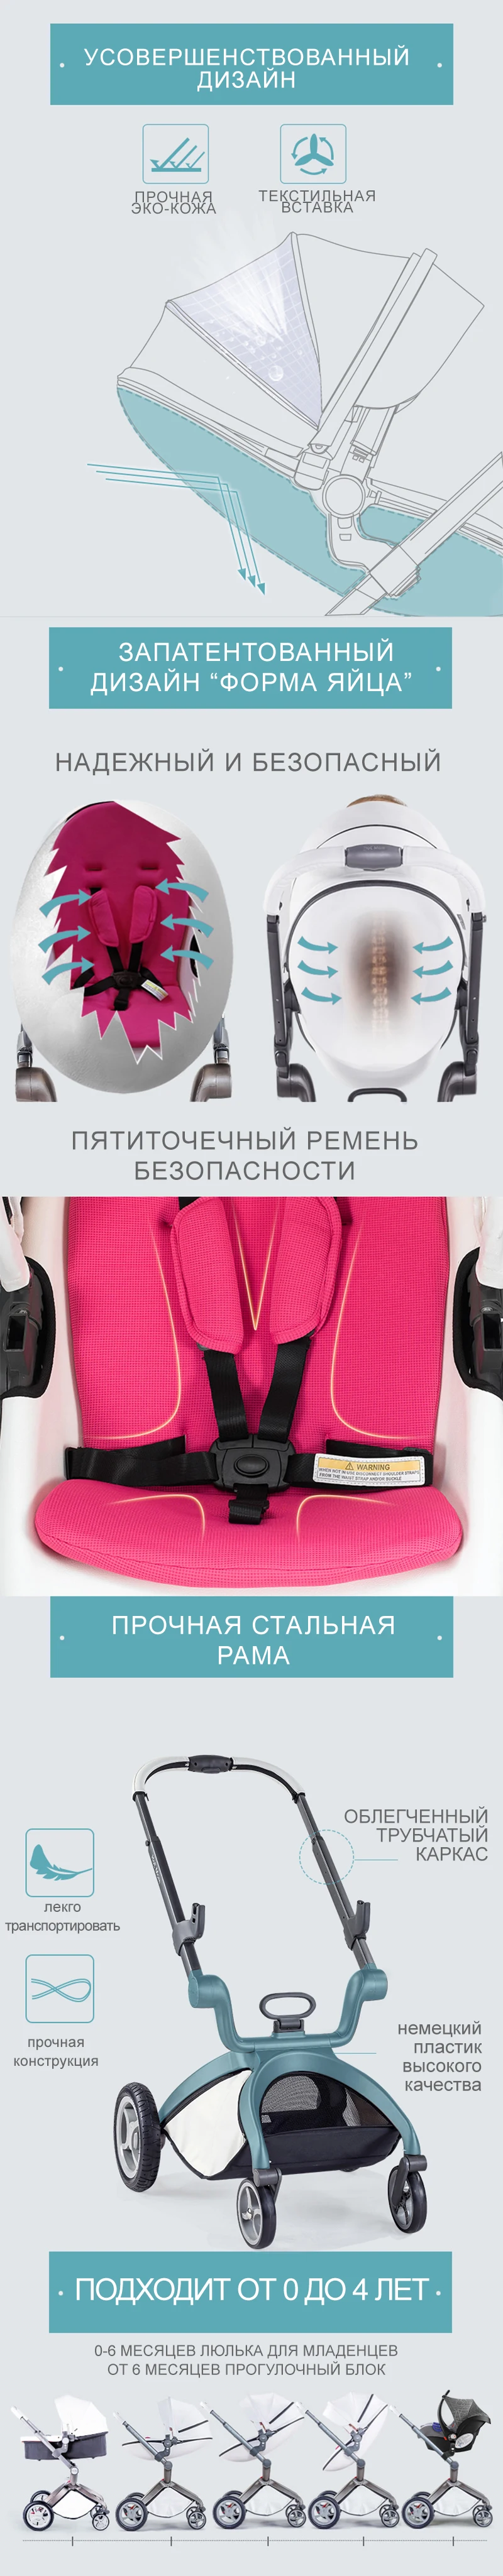 Hotmom 3 в 1 Кожаная корзина для сна коляска с высоким пейзажем может сидеть или лежать в сложенном виде в Россию